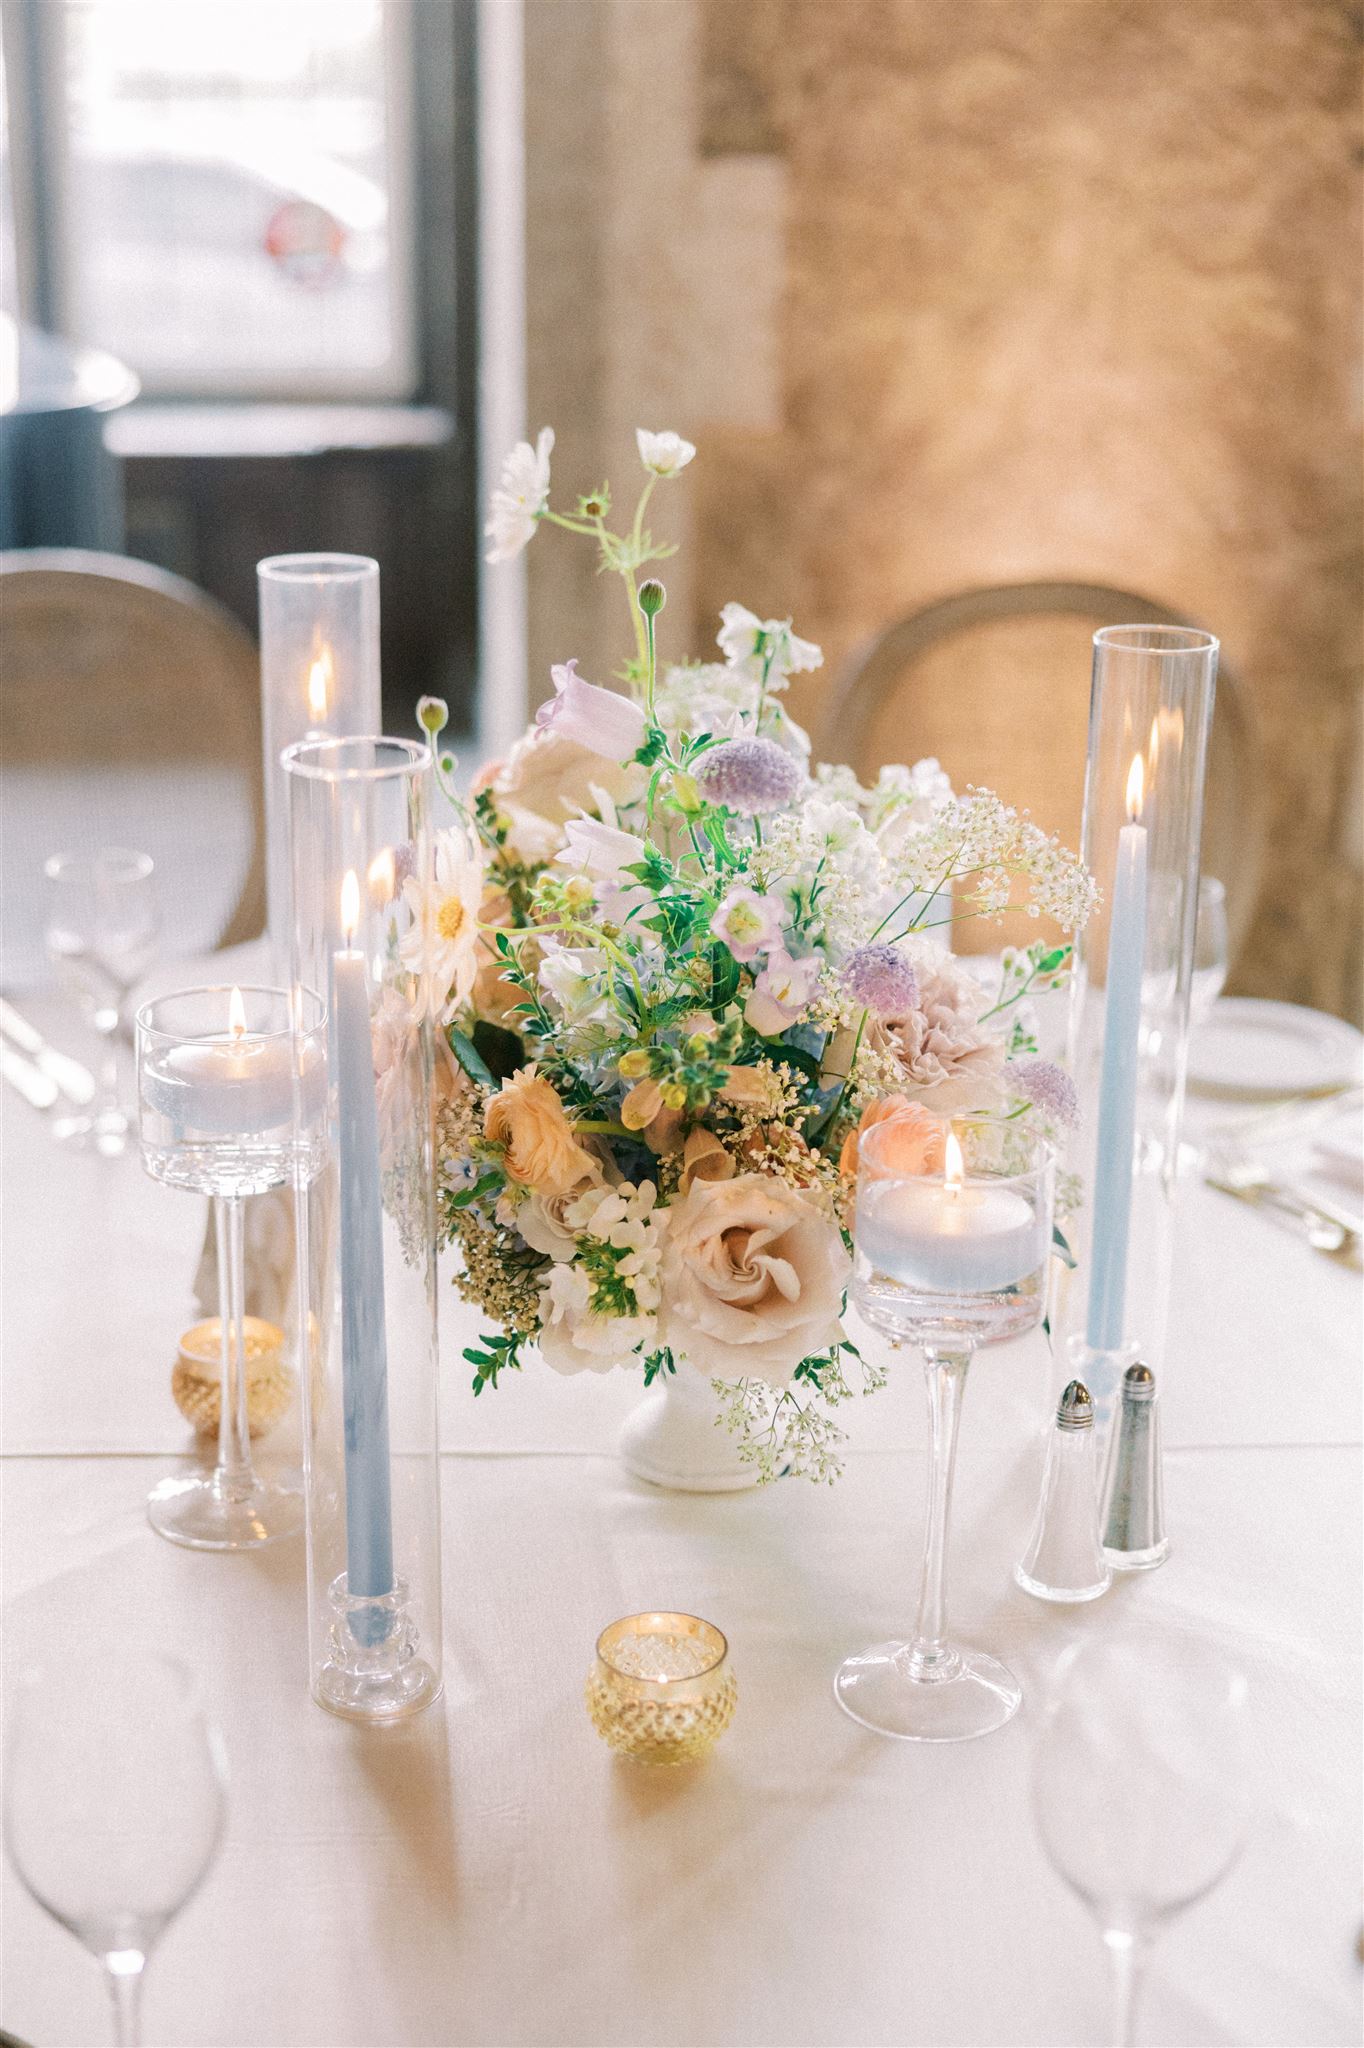 mt. stephen's hall wedding reception, floral arch, flower artistry centrepieces, wedding flower design, luxury reception banff springs